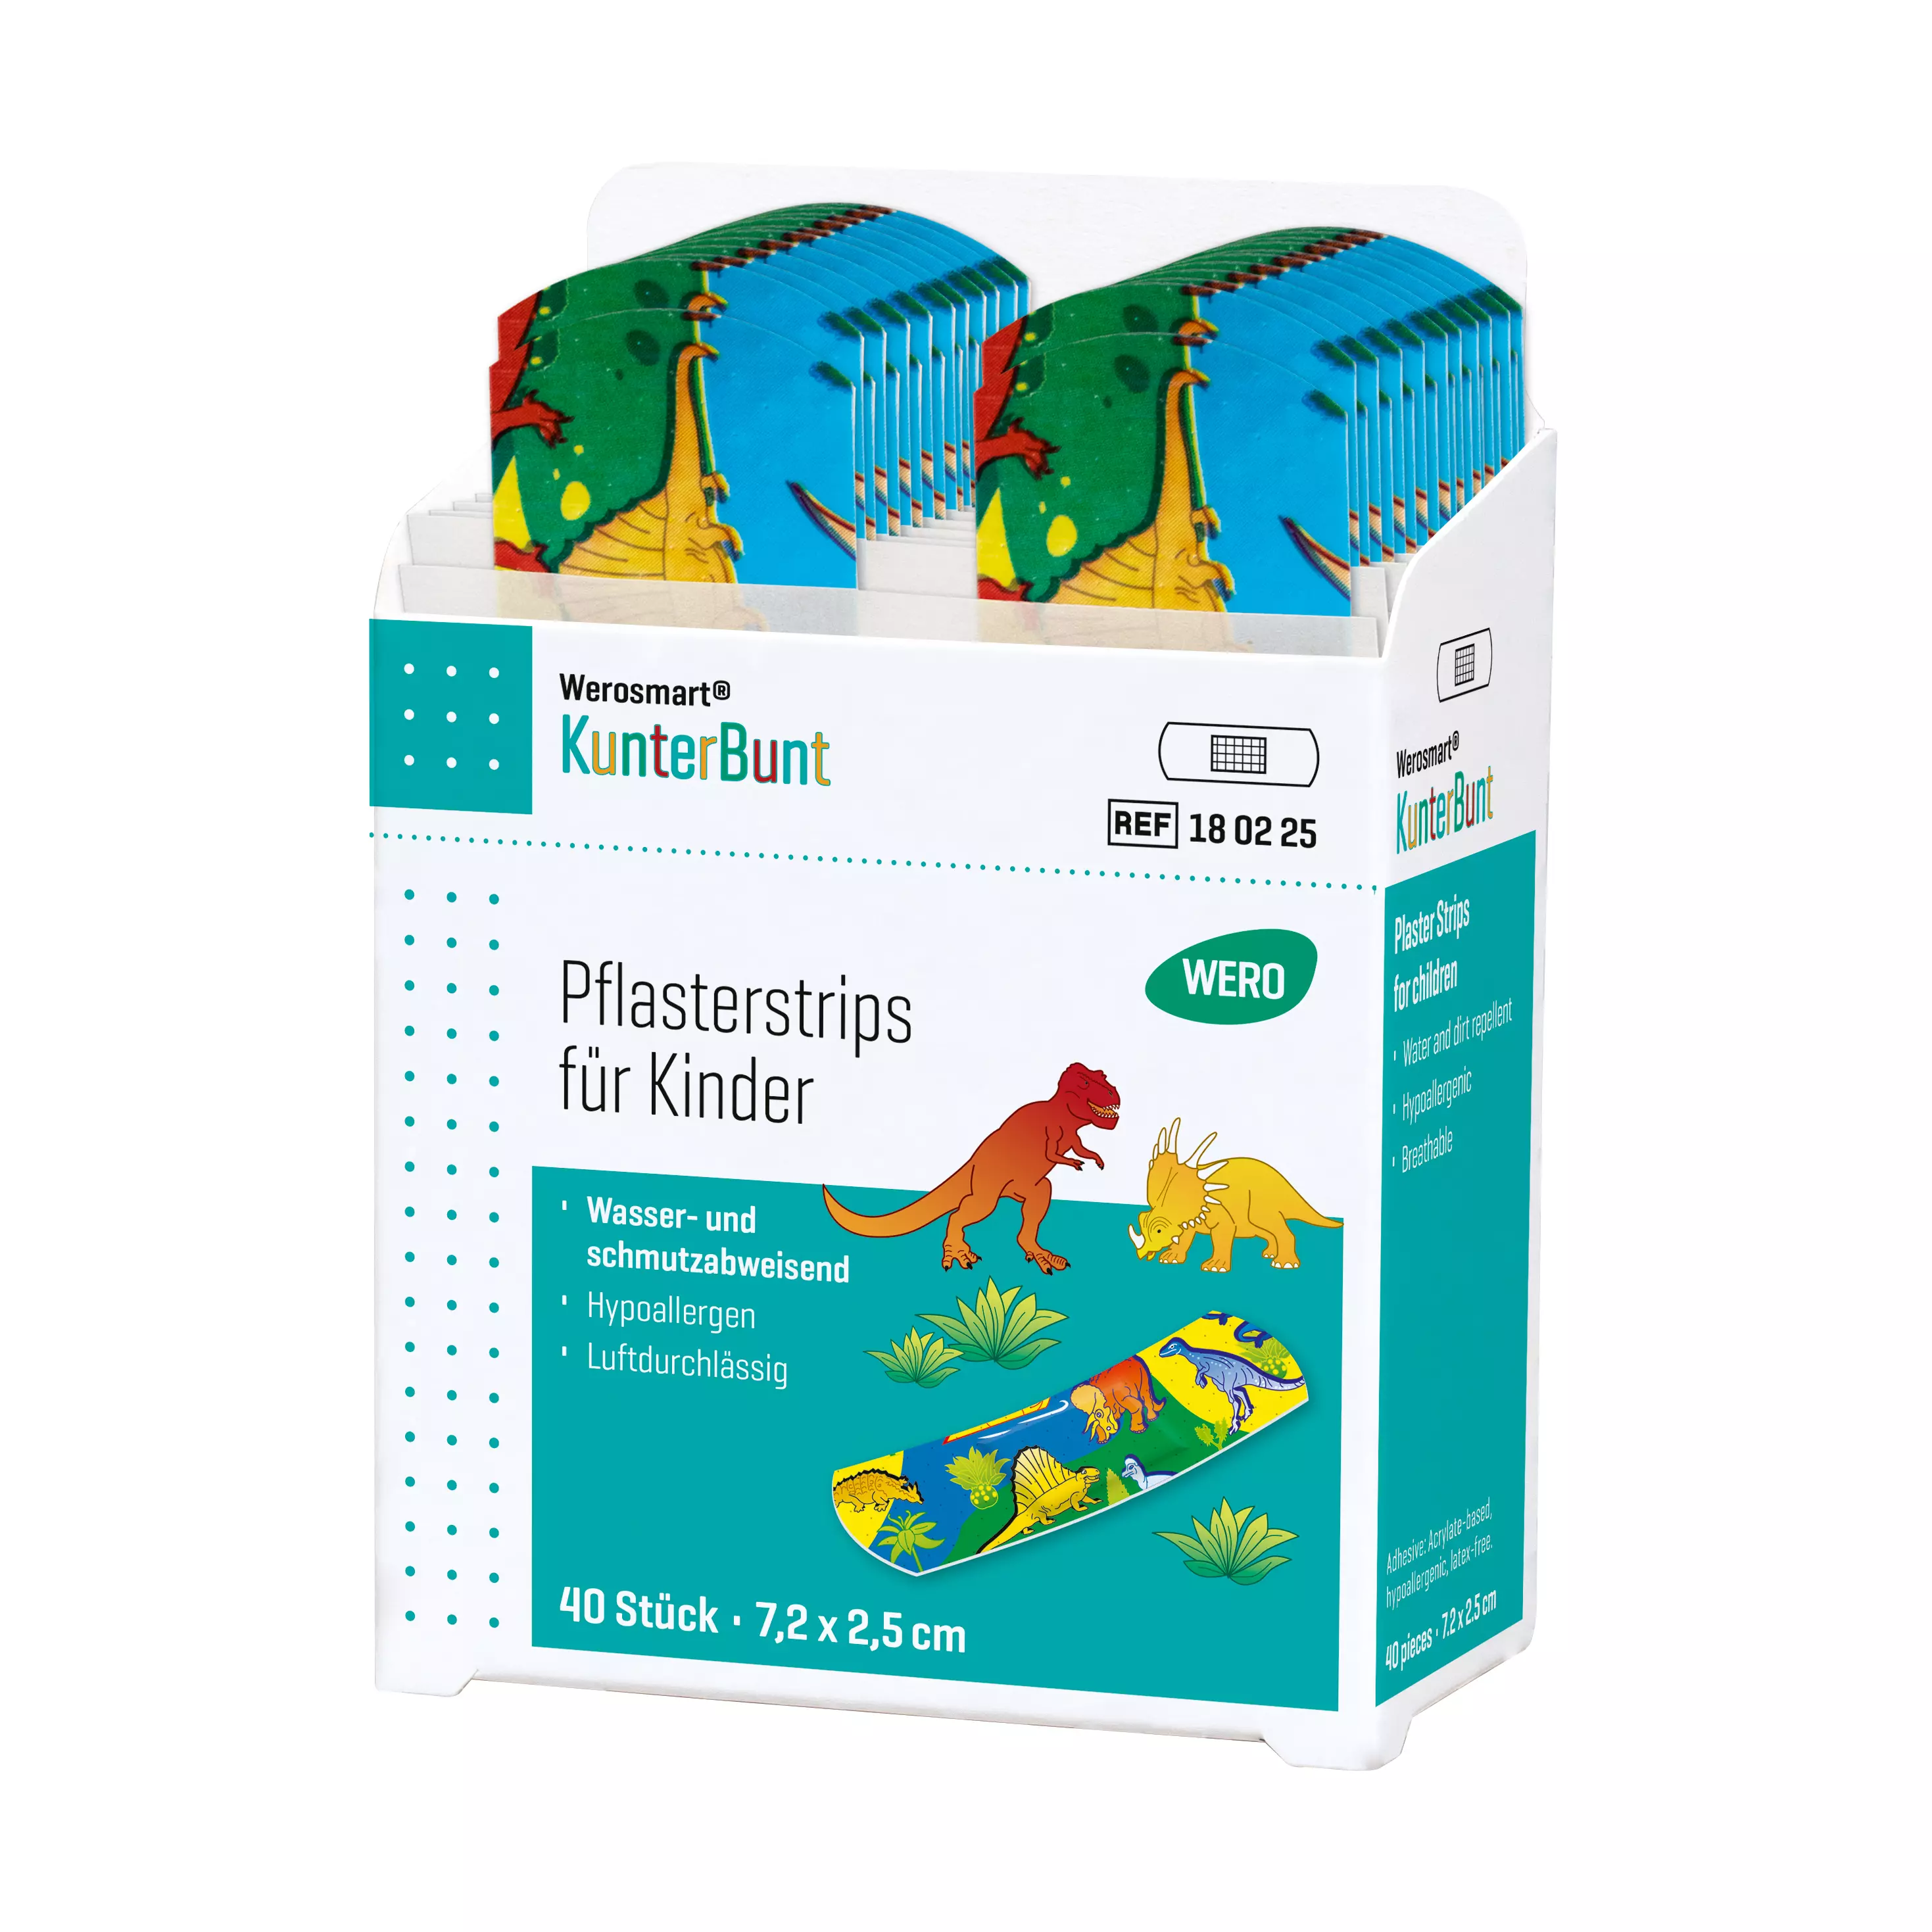 Werosmart® KunterBunt for children Plaster dispenser inserts Plaster strips - insert